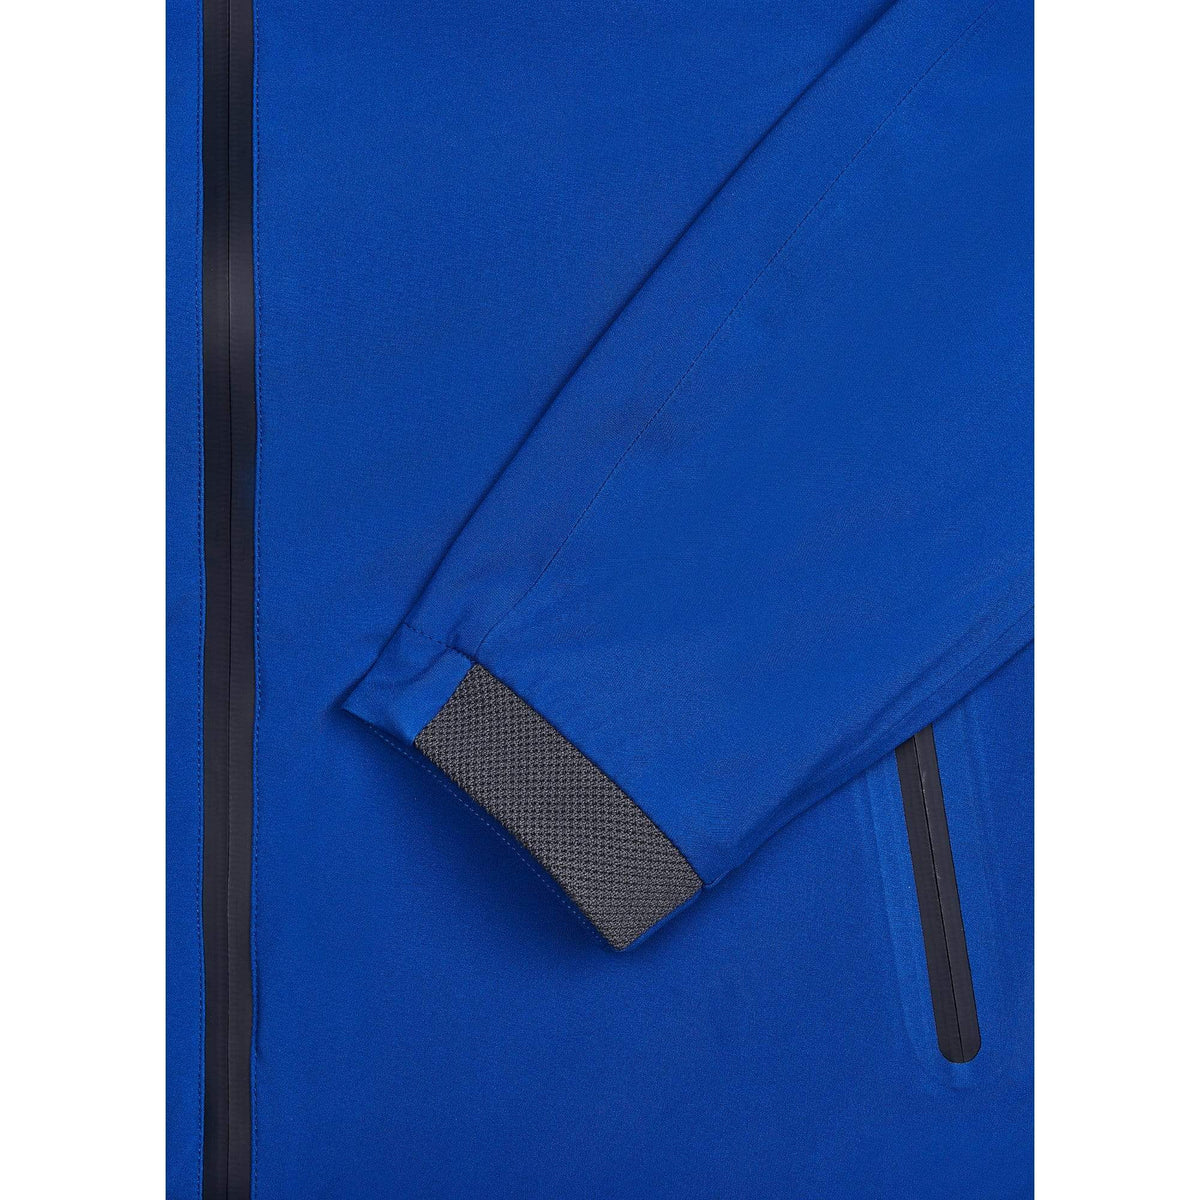 Hackett Outerwear Hackett Electric Blue Soft Jacket